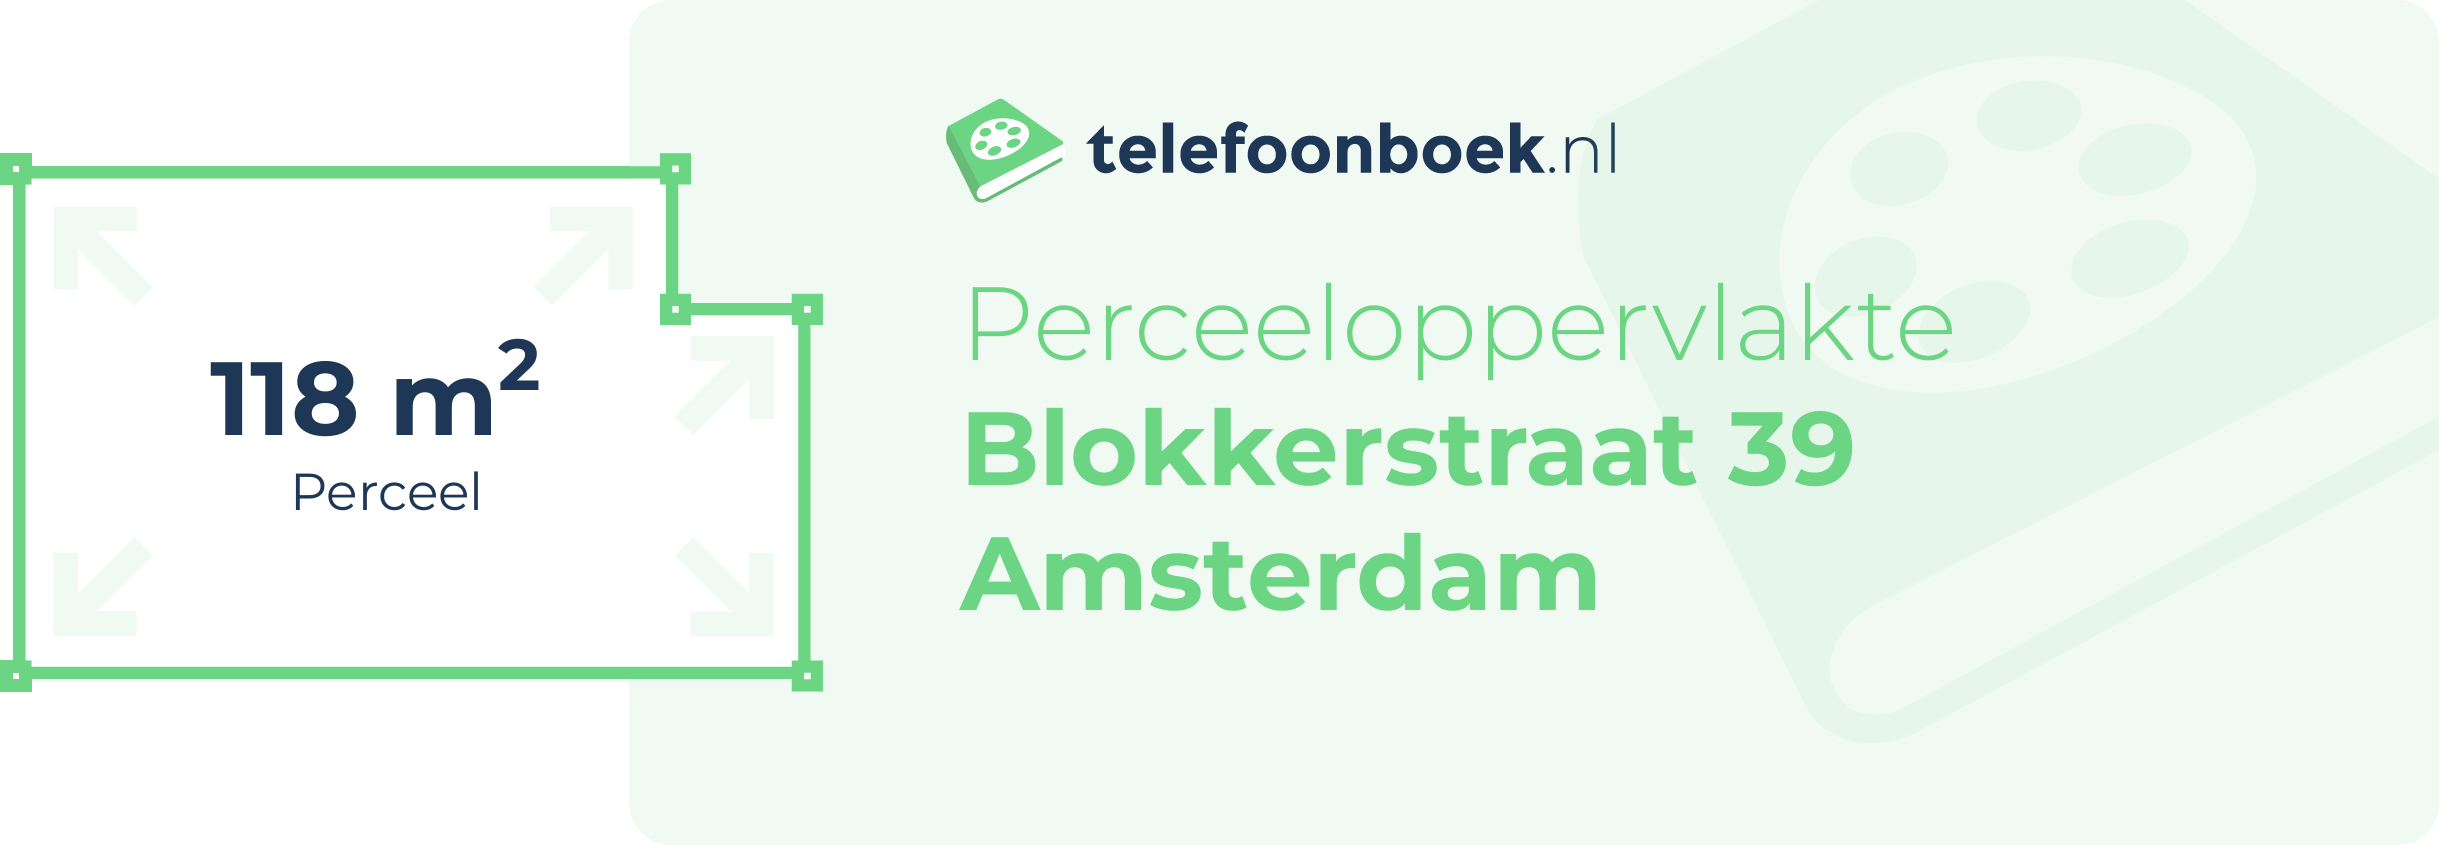 Perceeloppervlakte Blokkerstraat 39 Amsterdam